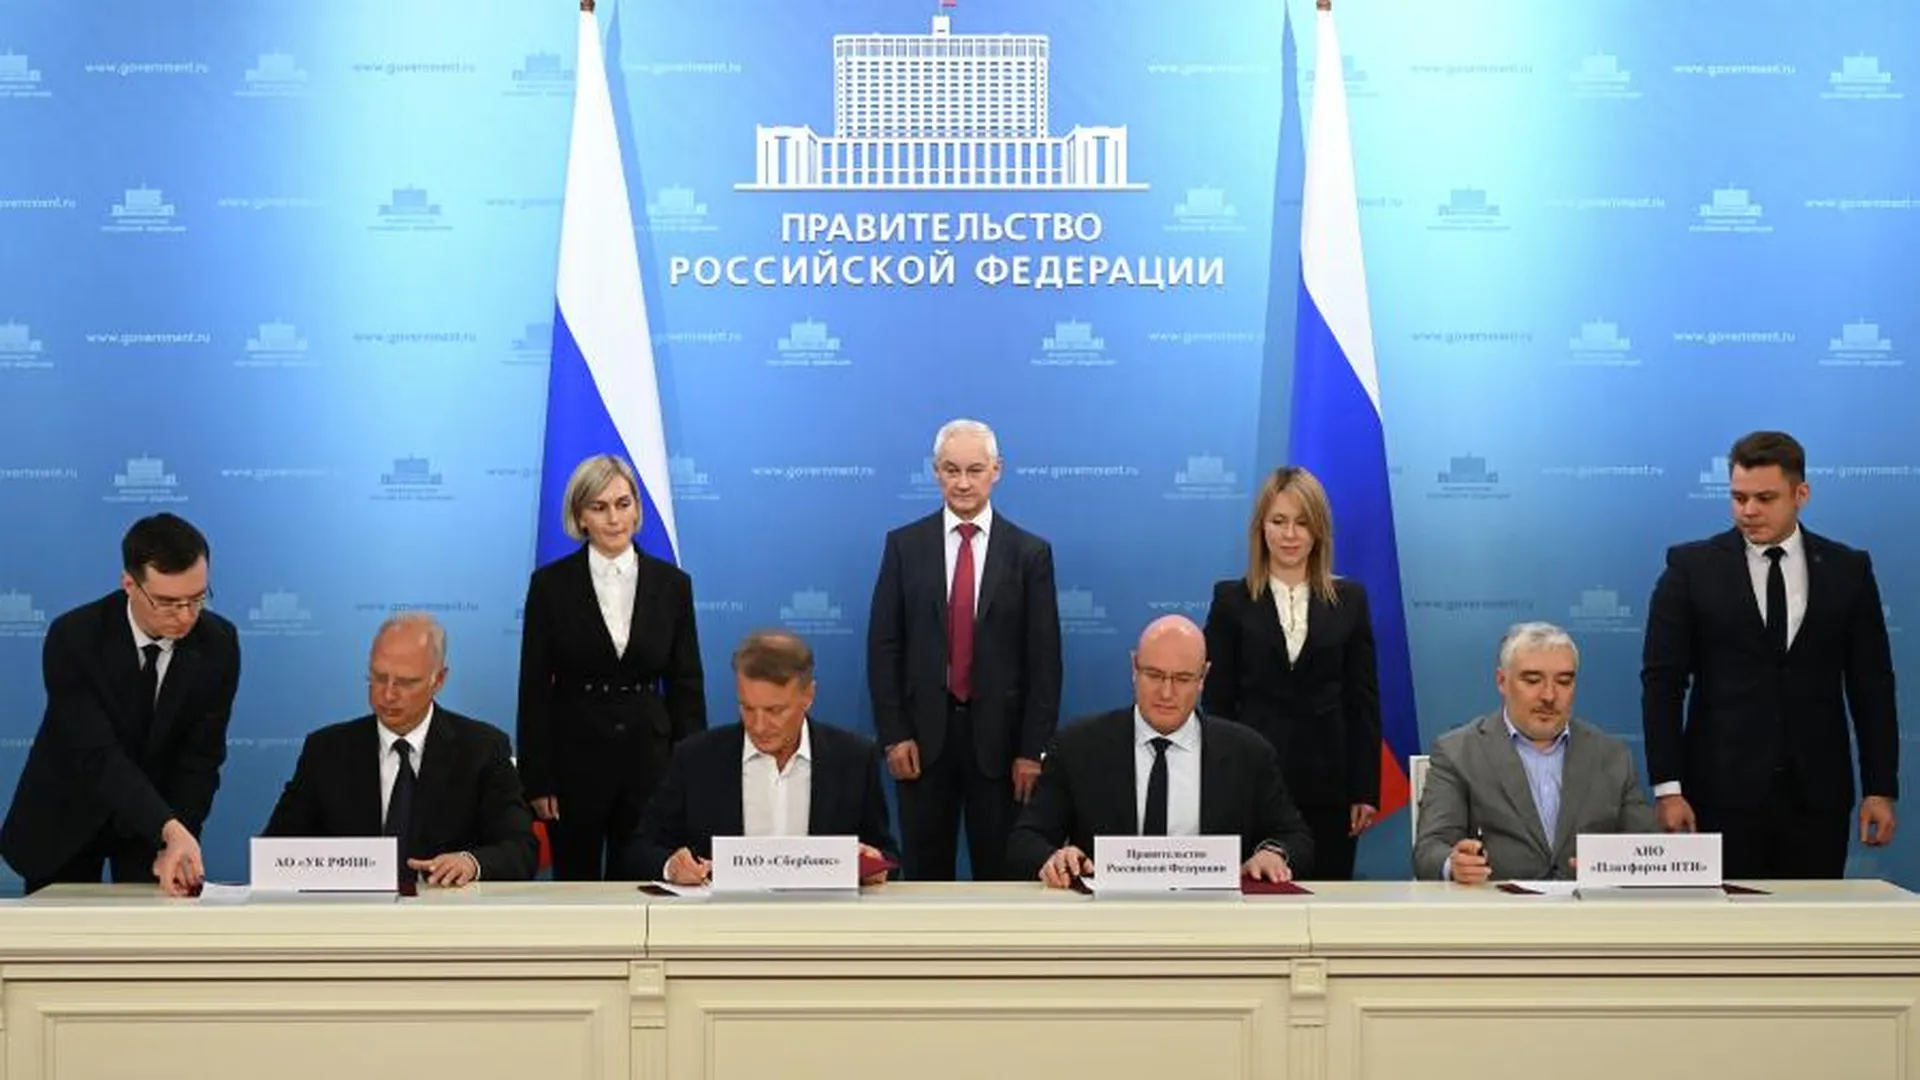 Правительство и бизнес РФ подписали соглашение о сотрудничестве по «дорожным картам»